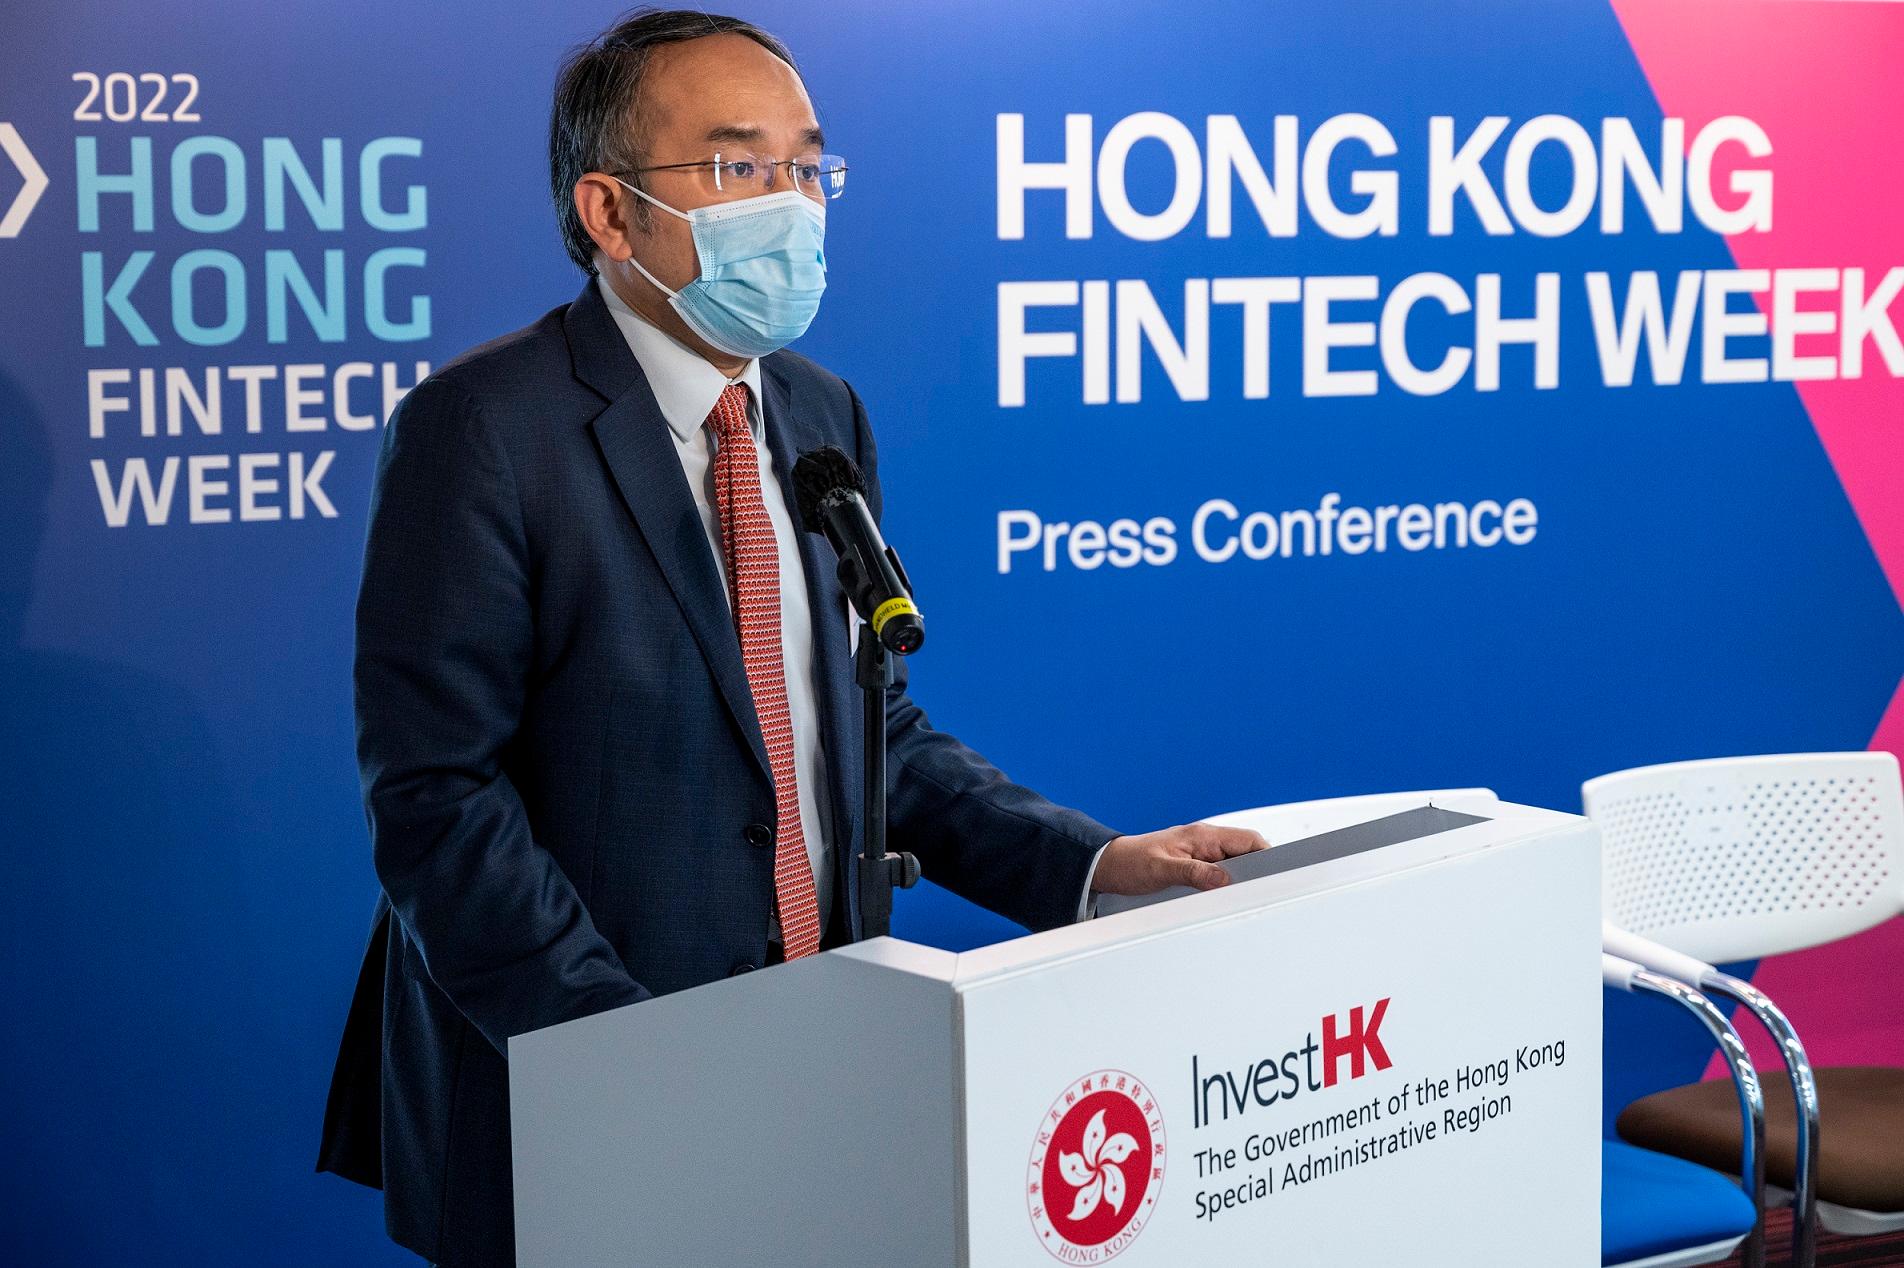 財經事務及庫務局局長許正宇今日（十月十三日）公布香港金融科技周2022中非同質化代幣的發行細節，並預告政府將正式發布有關虛擬資產在香港發展的政策聲明。